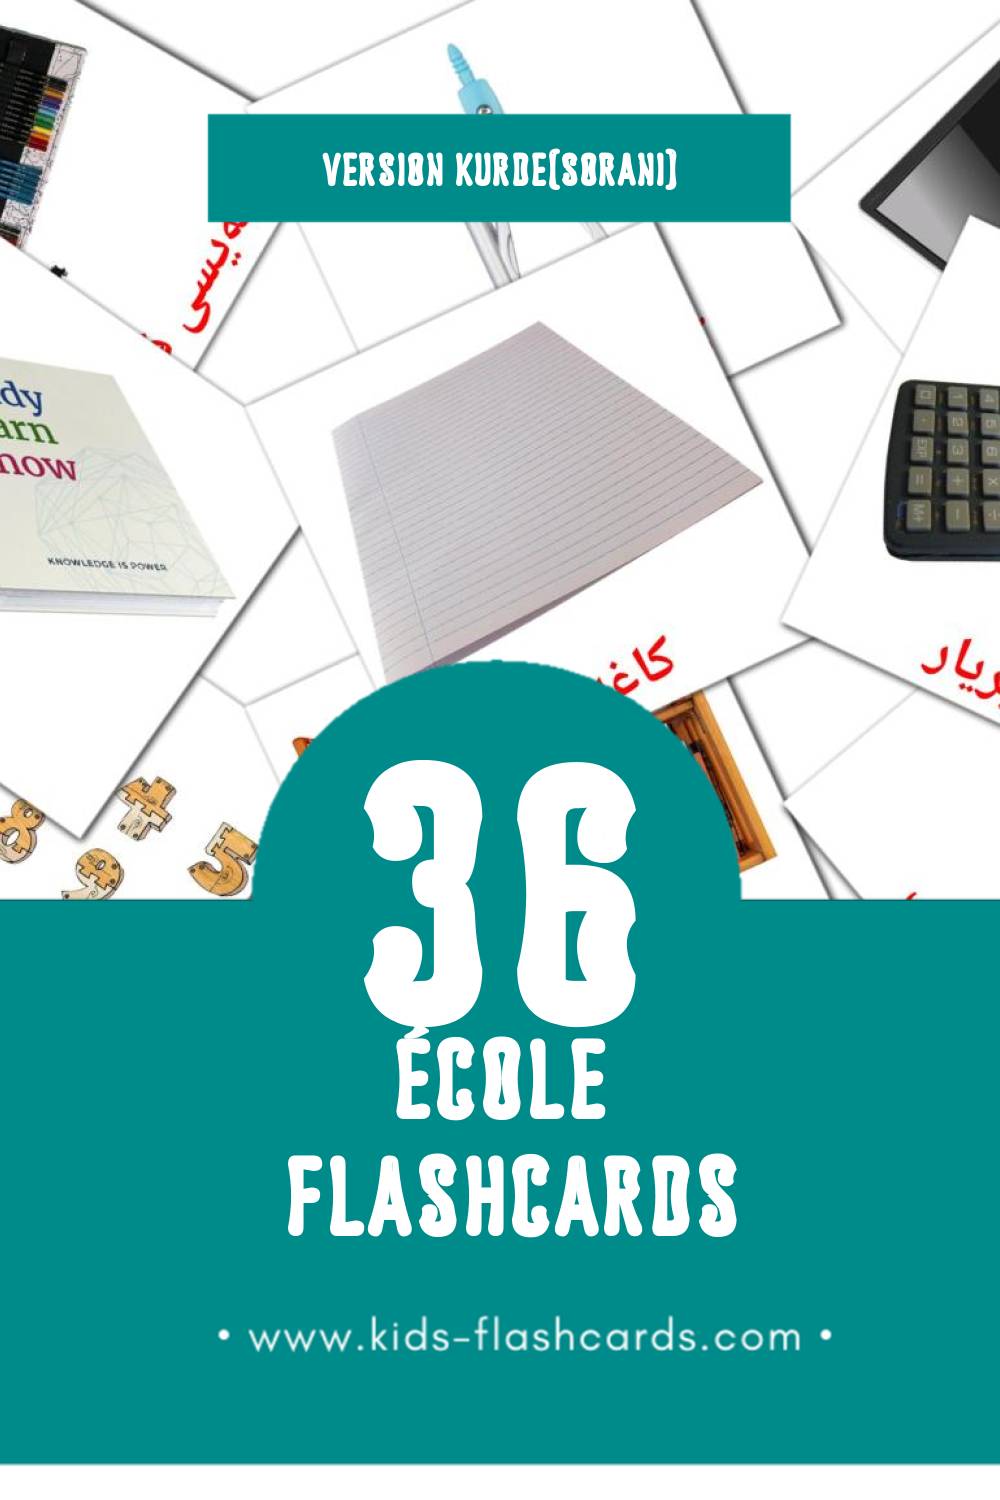 Flashcards Visual قوتابخانە pour les tout-petits (36 cartes en Kurde(sorani))